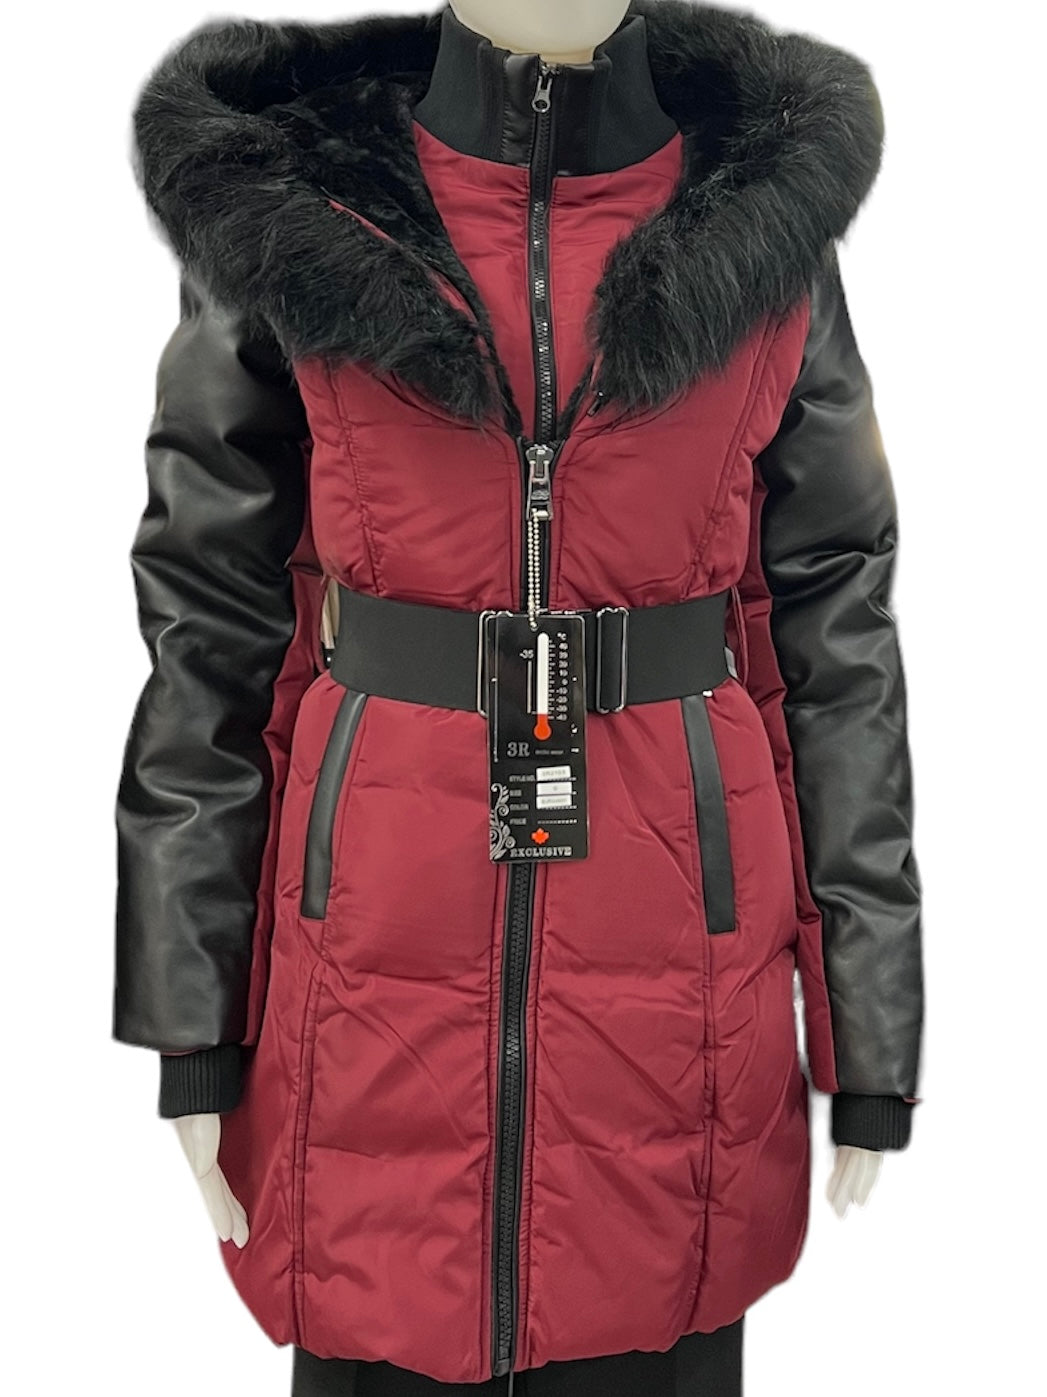 Le manteau d'hiver 3R Arctic Wear comporte une chaleur assurée pour vous garder au chaud toute l'année! Disponible en bourgogne, ce manteau est la pièce parfaite pour avoir un look élégant même en plein hiver. Beaucoup de style et une chaleur bonus en option!